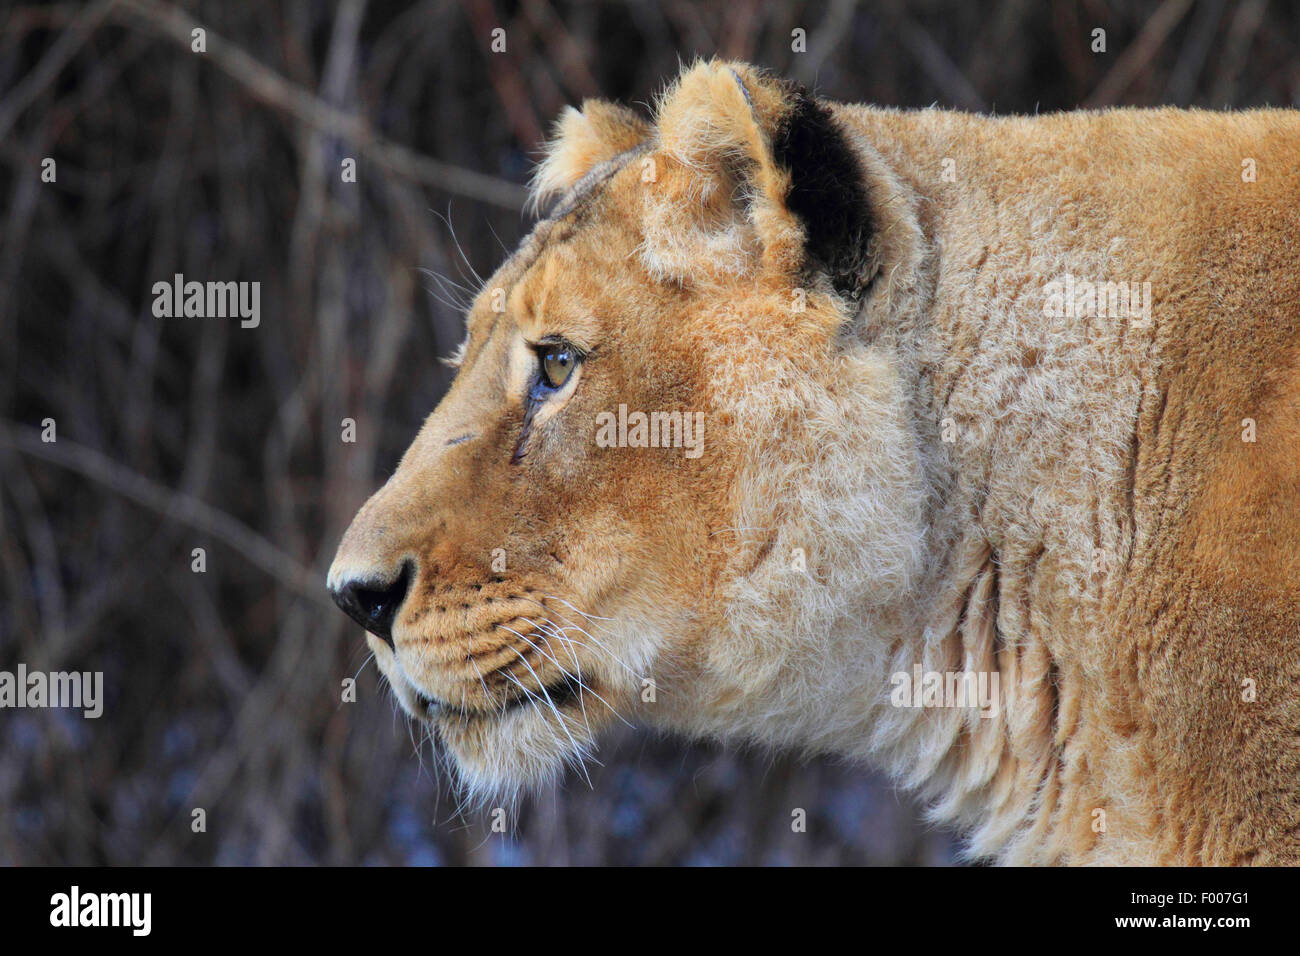 Lion d'Asie (Panthera leo persica goojratensis), portrait d'une lionne Banque D'Images